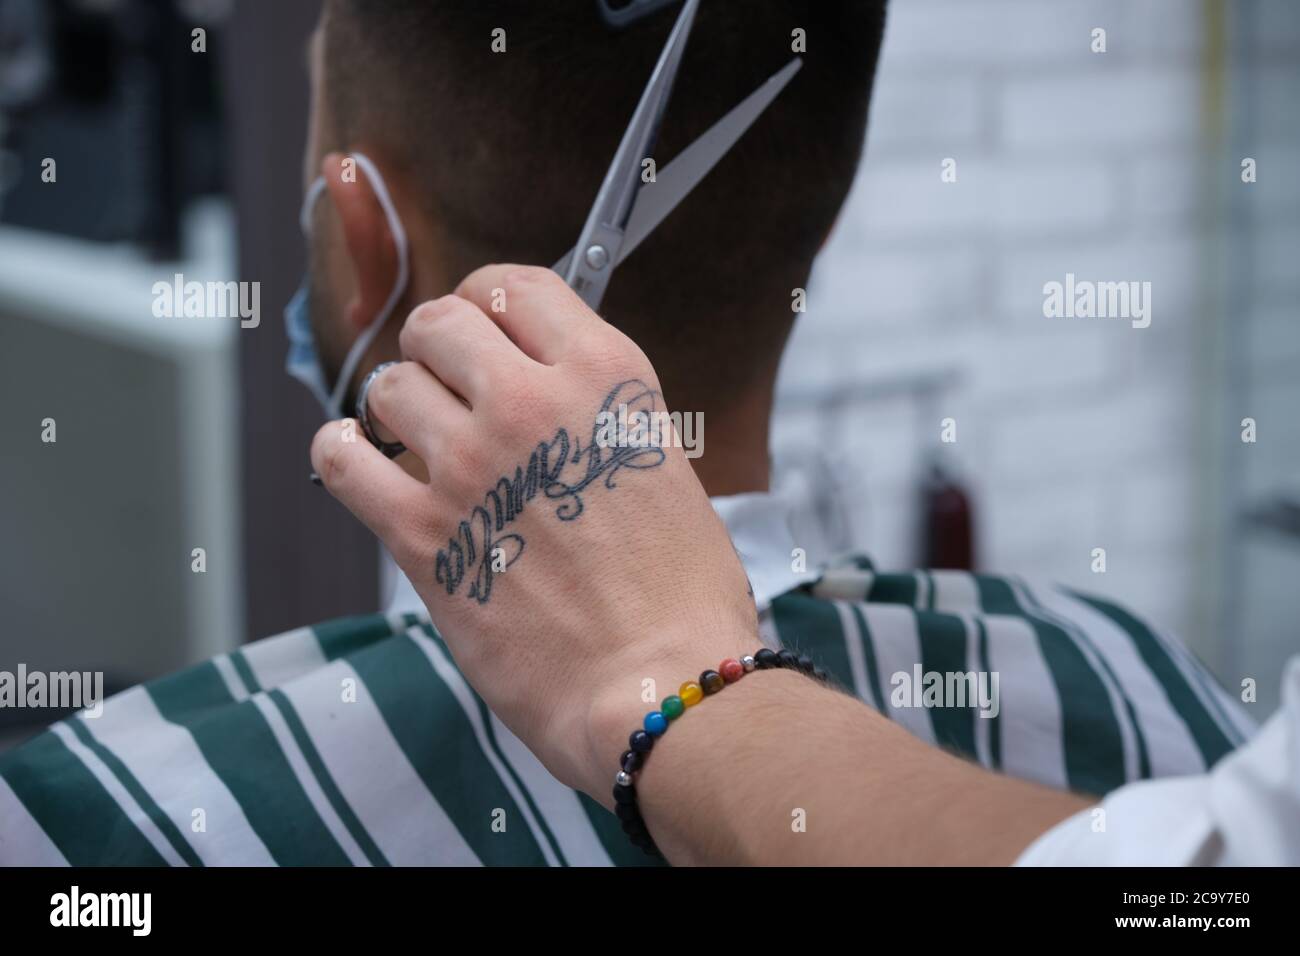 Friseurhands mit Tattoos und Armbänder Schneiden von Haaren mit Schere und  Vintage Kamm mit Schutzmaske, horizontales Format Stockfotografie - Alamy